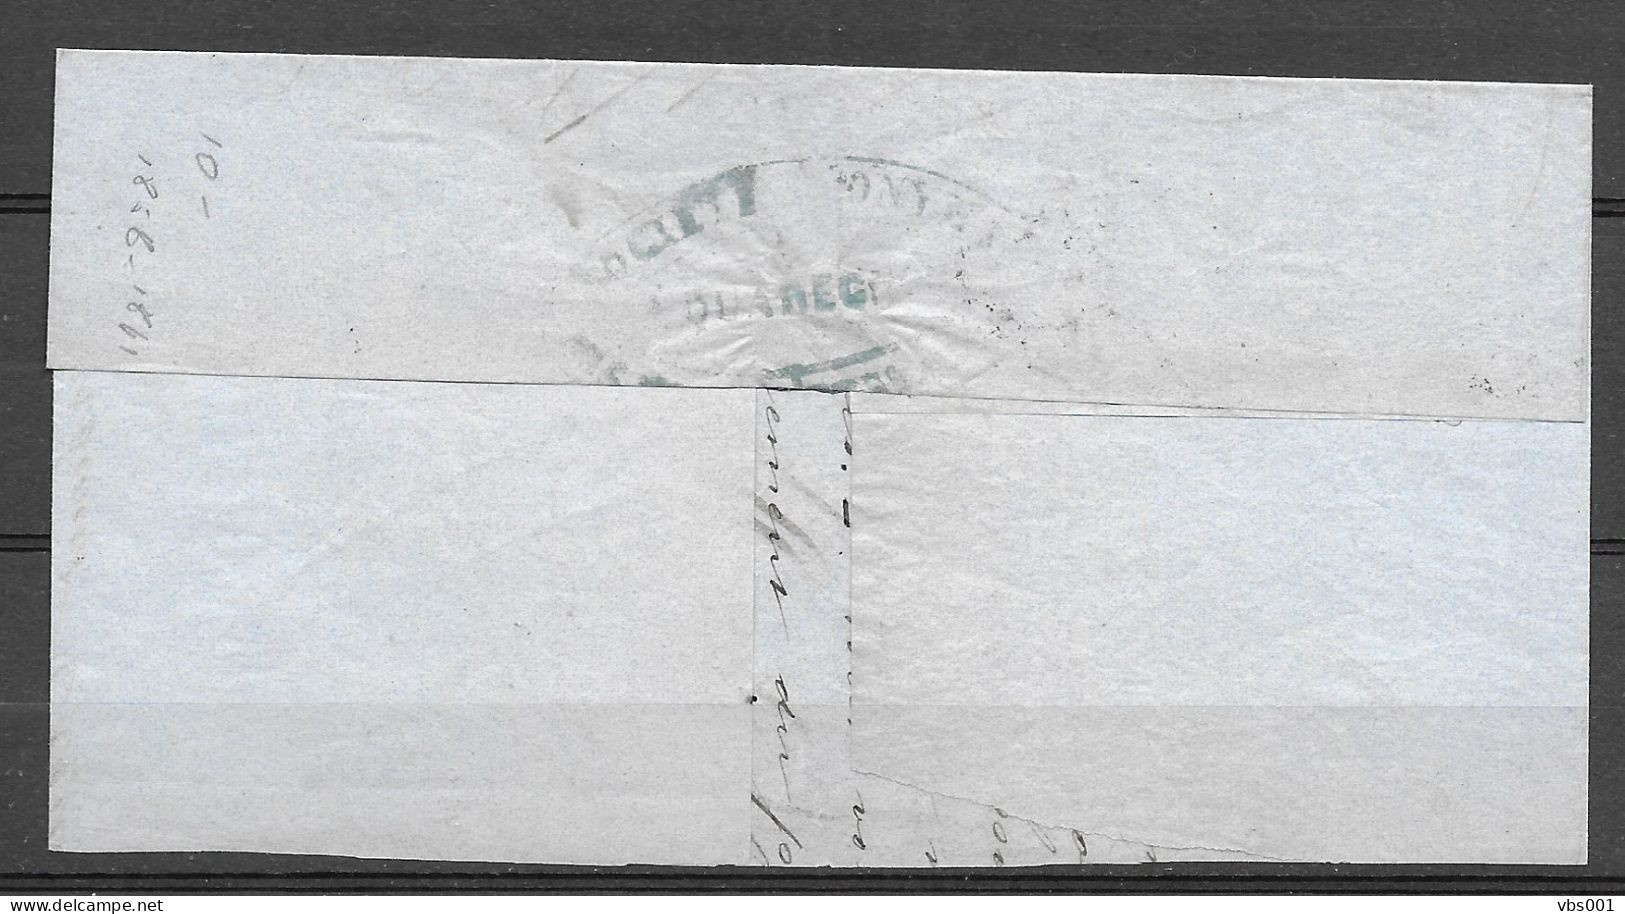 OBP10A Op Brief Uit 1860 Verzonden Vanuit Jemmapes (P65), Met Vertrekstempel - 1858-1862 Medallions (9/12)